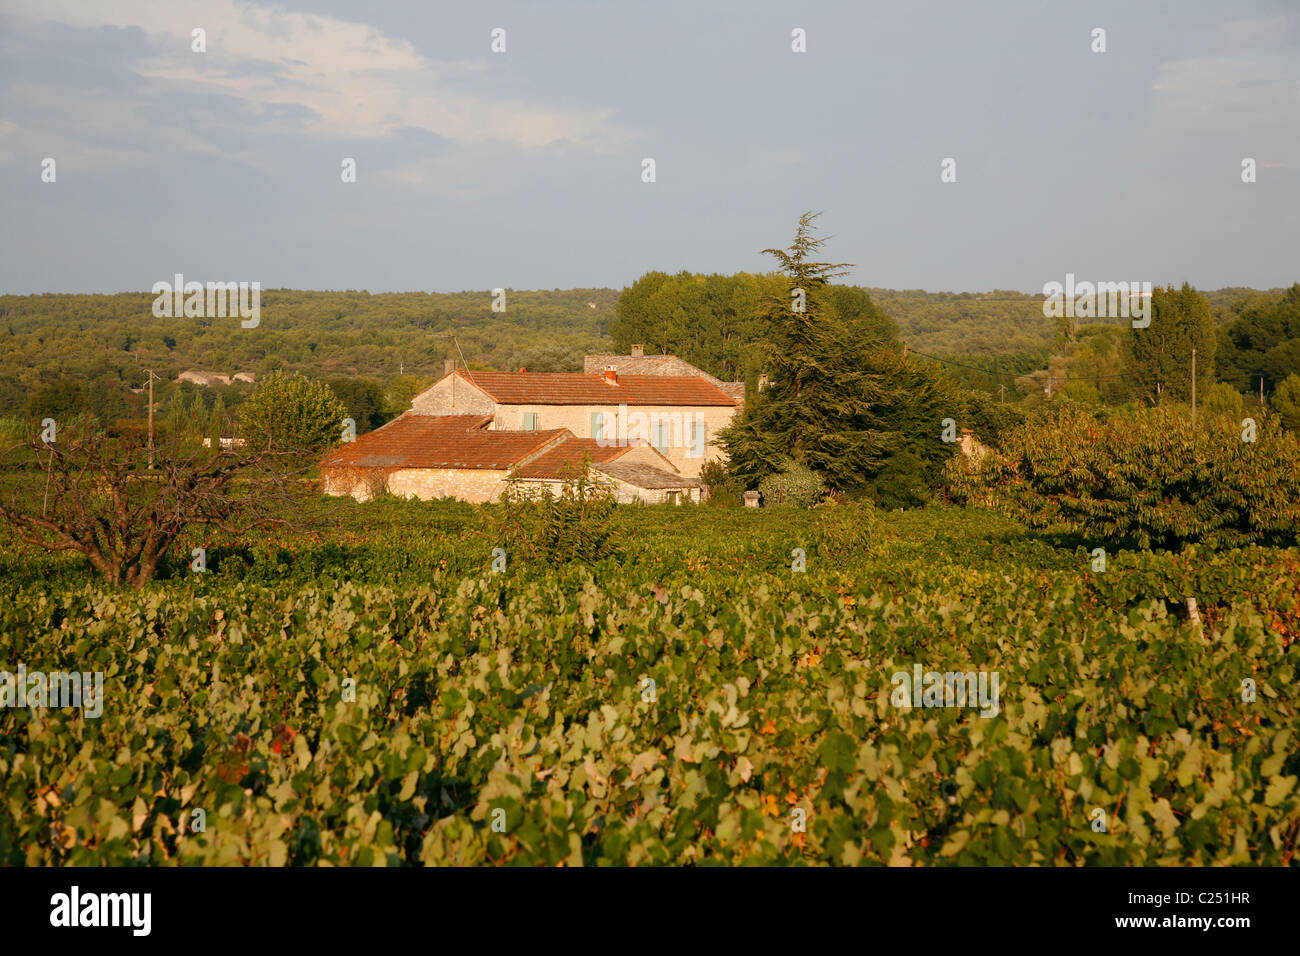 Maison dans la région des collines du Luberon, Vaucluse, Provence, France. Banque D'Images